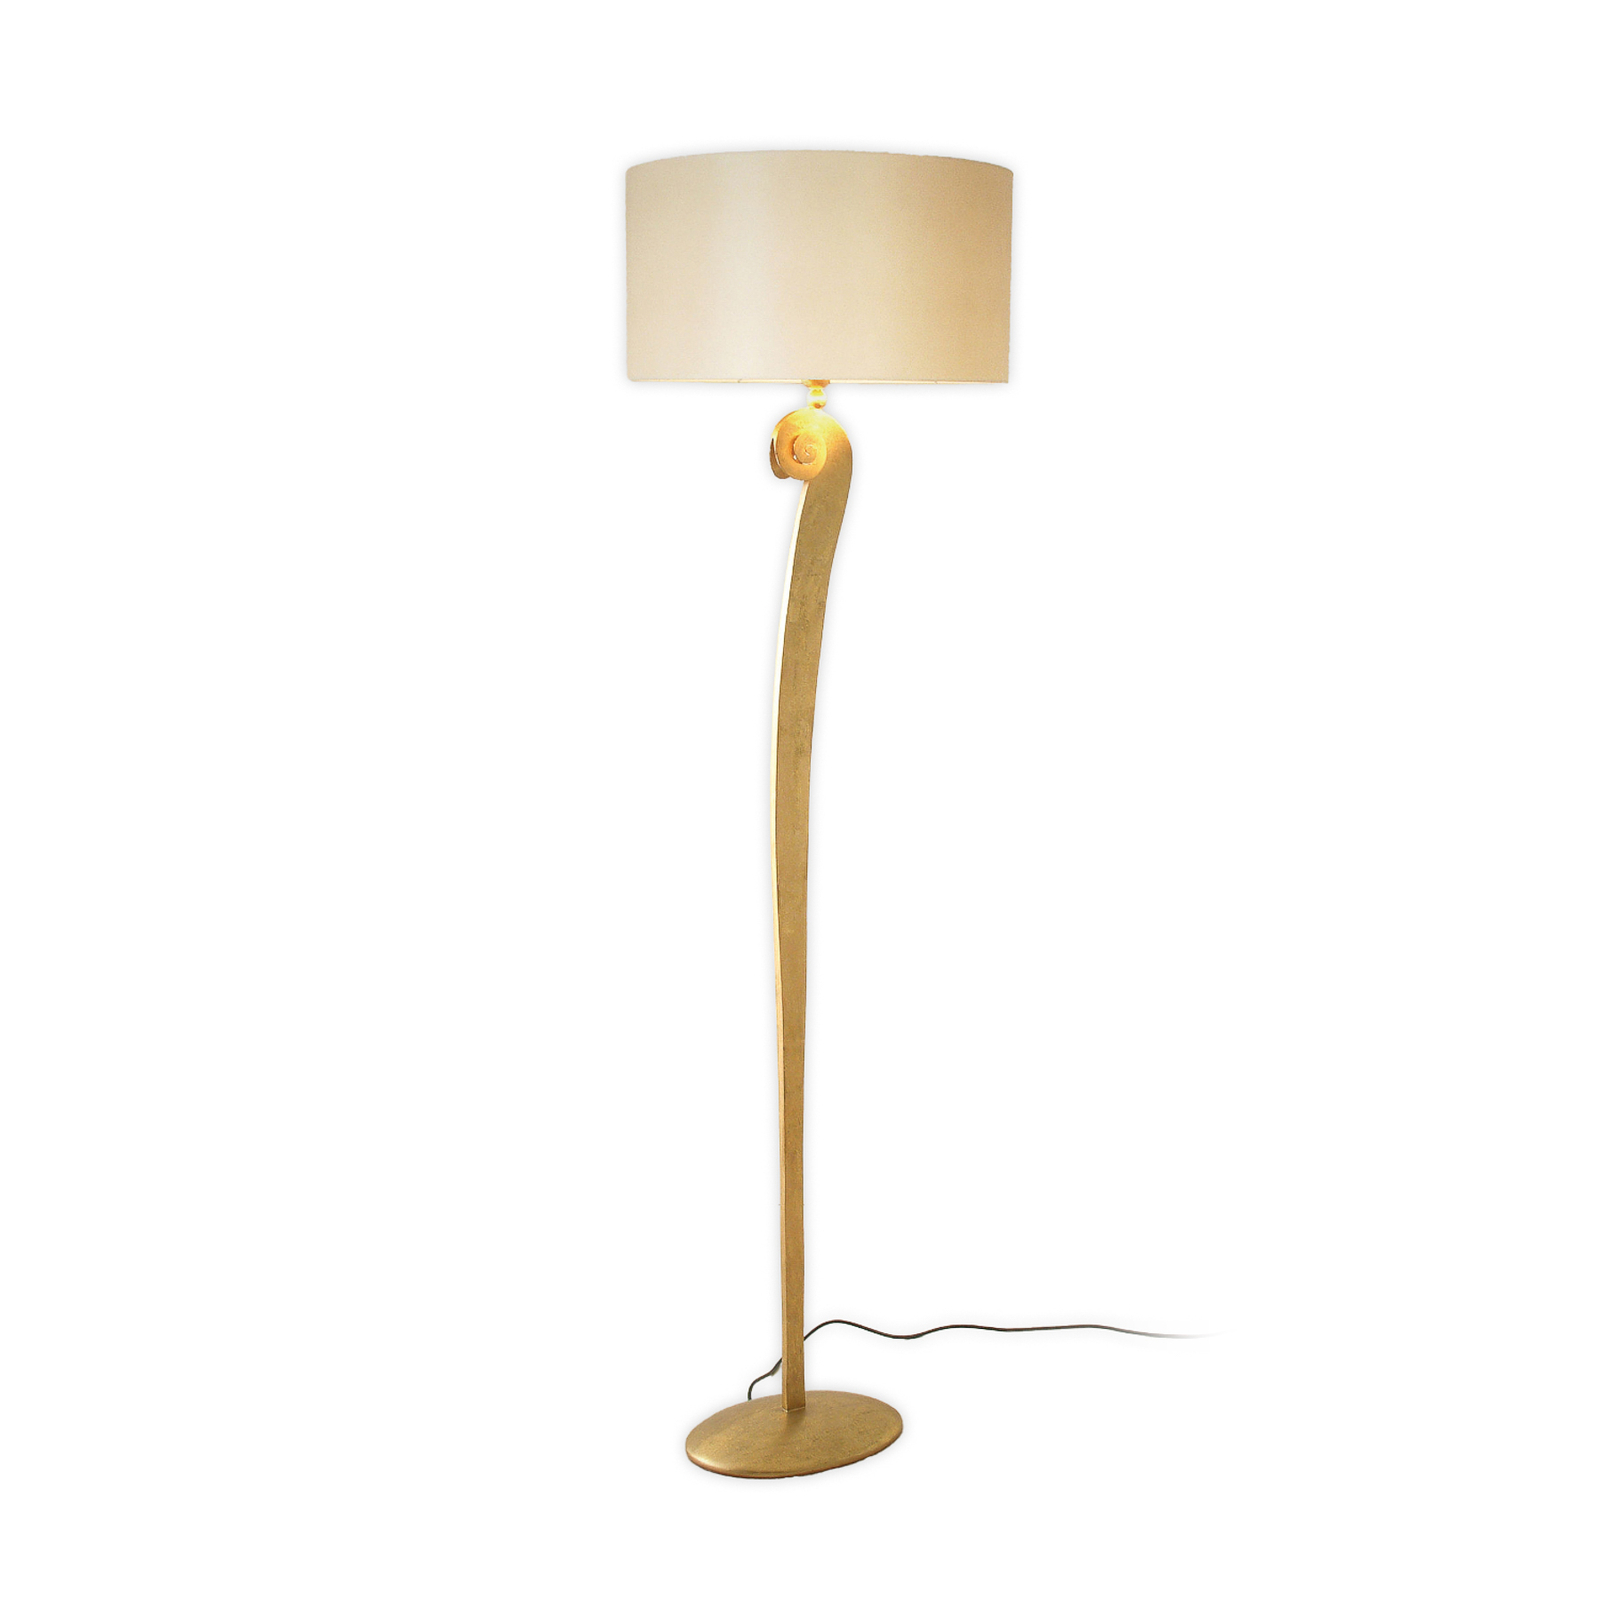 Lino állólámpa, arany/ecru színű, 160 cm magas, vasból készült